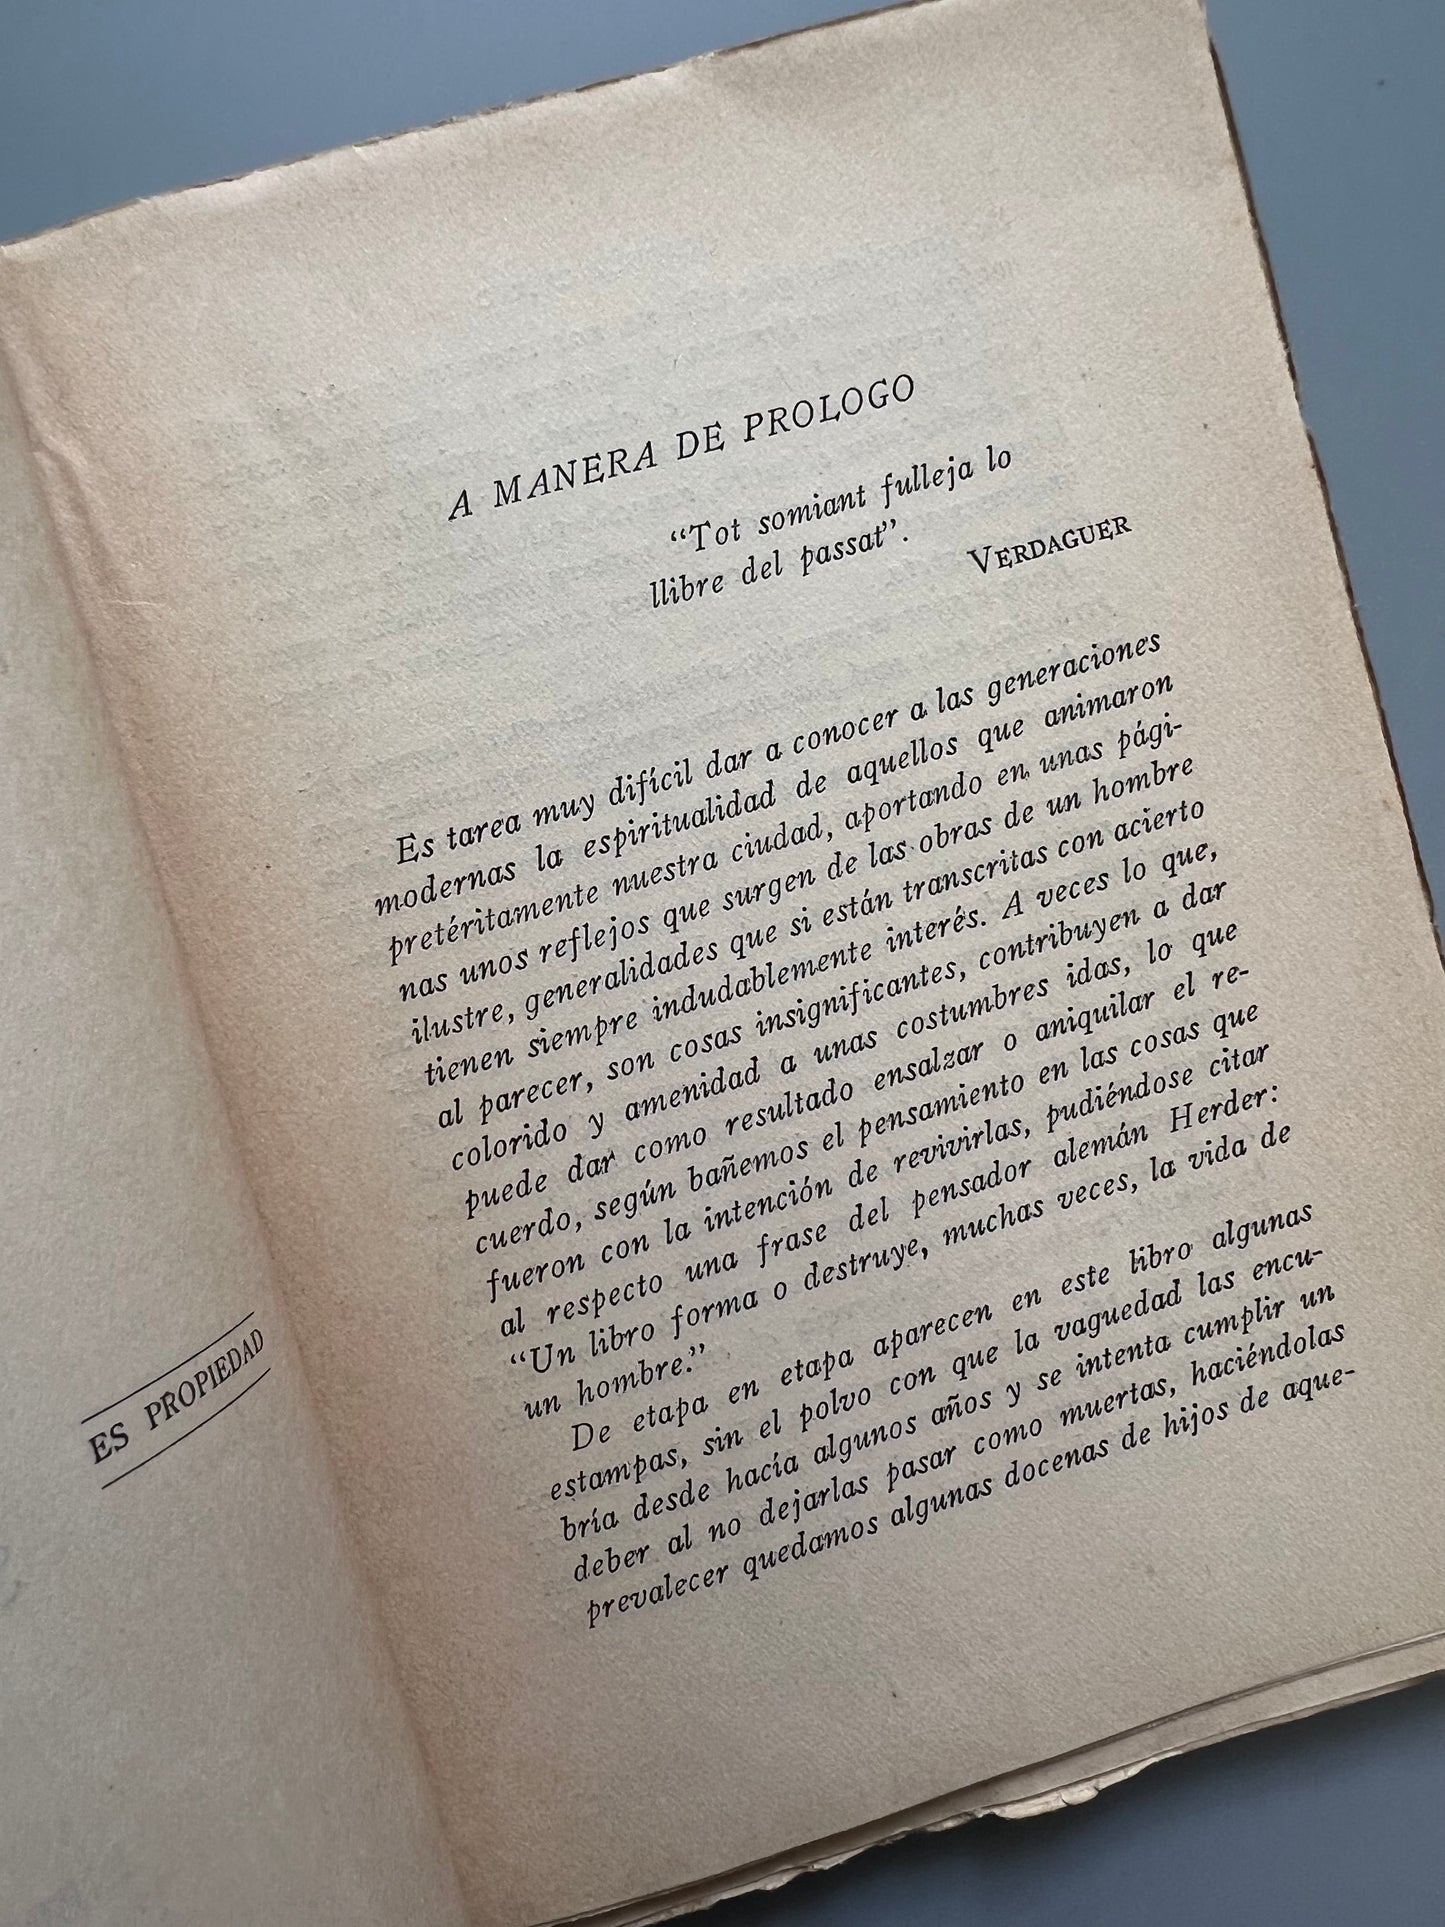 Federico Soler (Pitarra), Joaquin Ciervo - Librería Dalmau, 1944